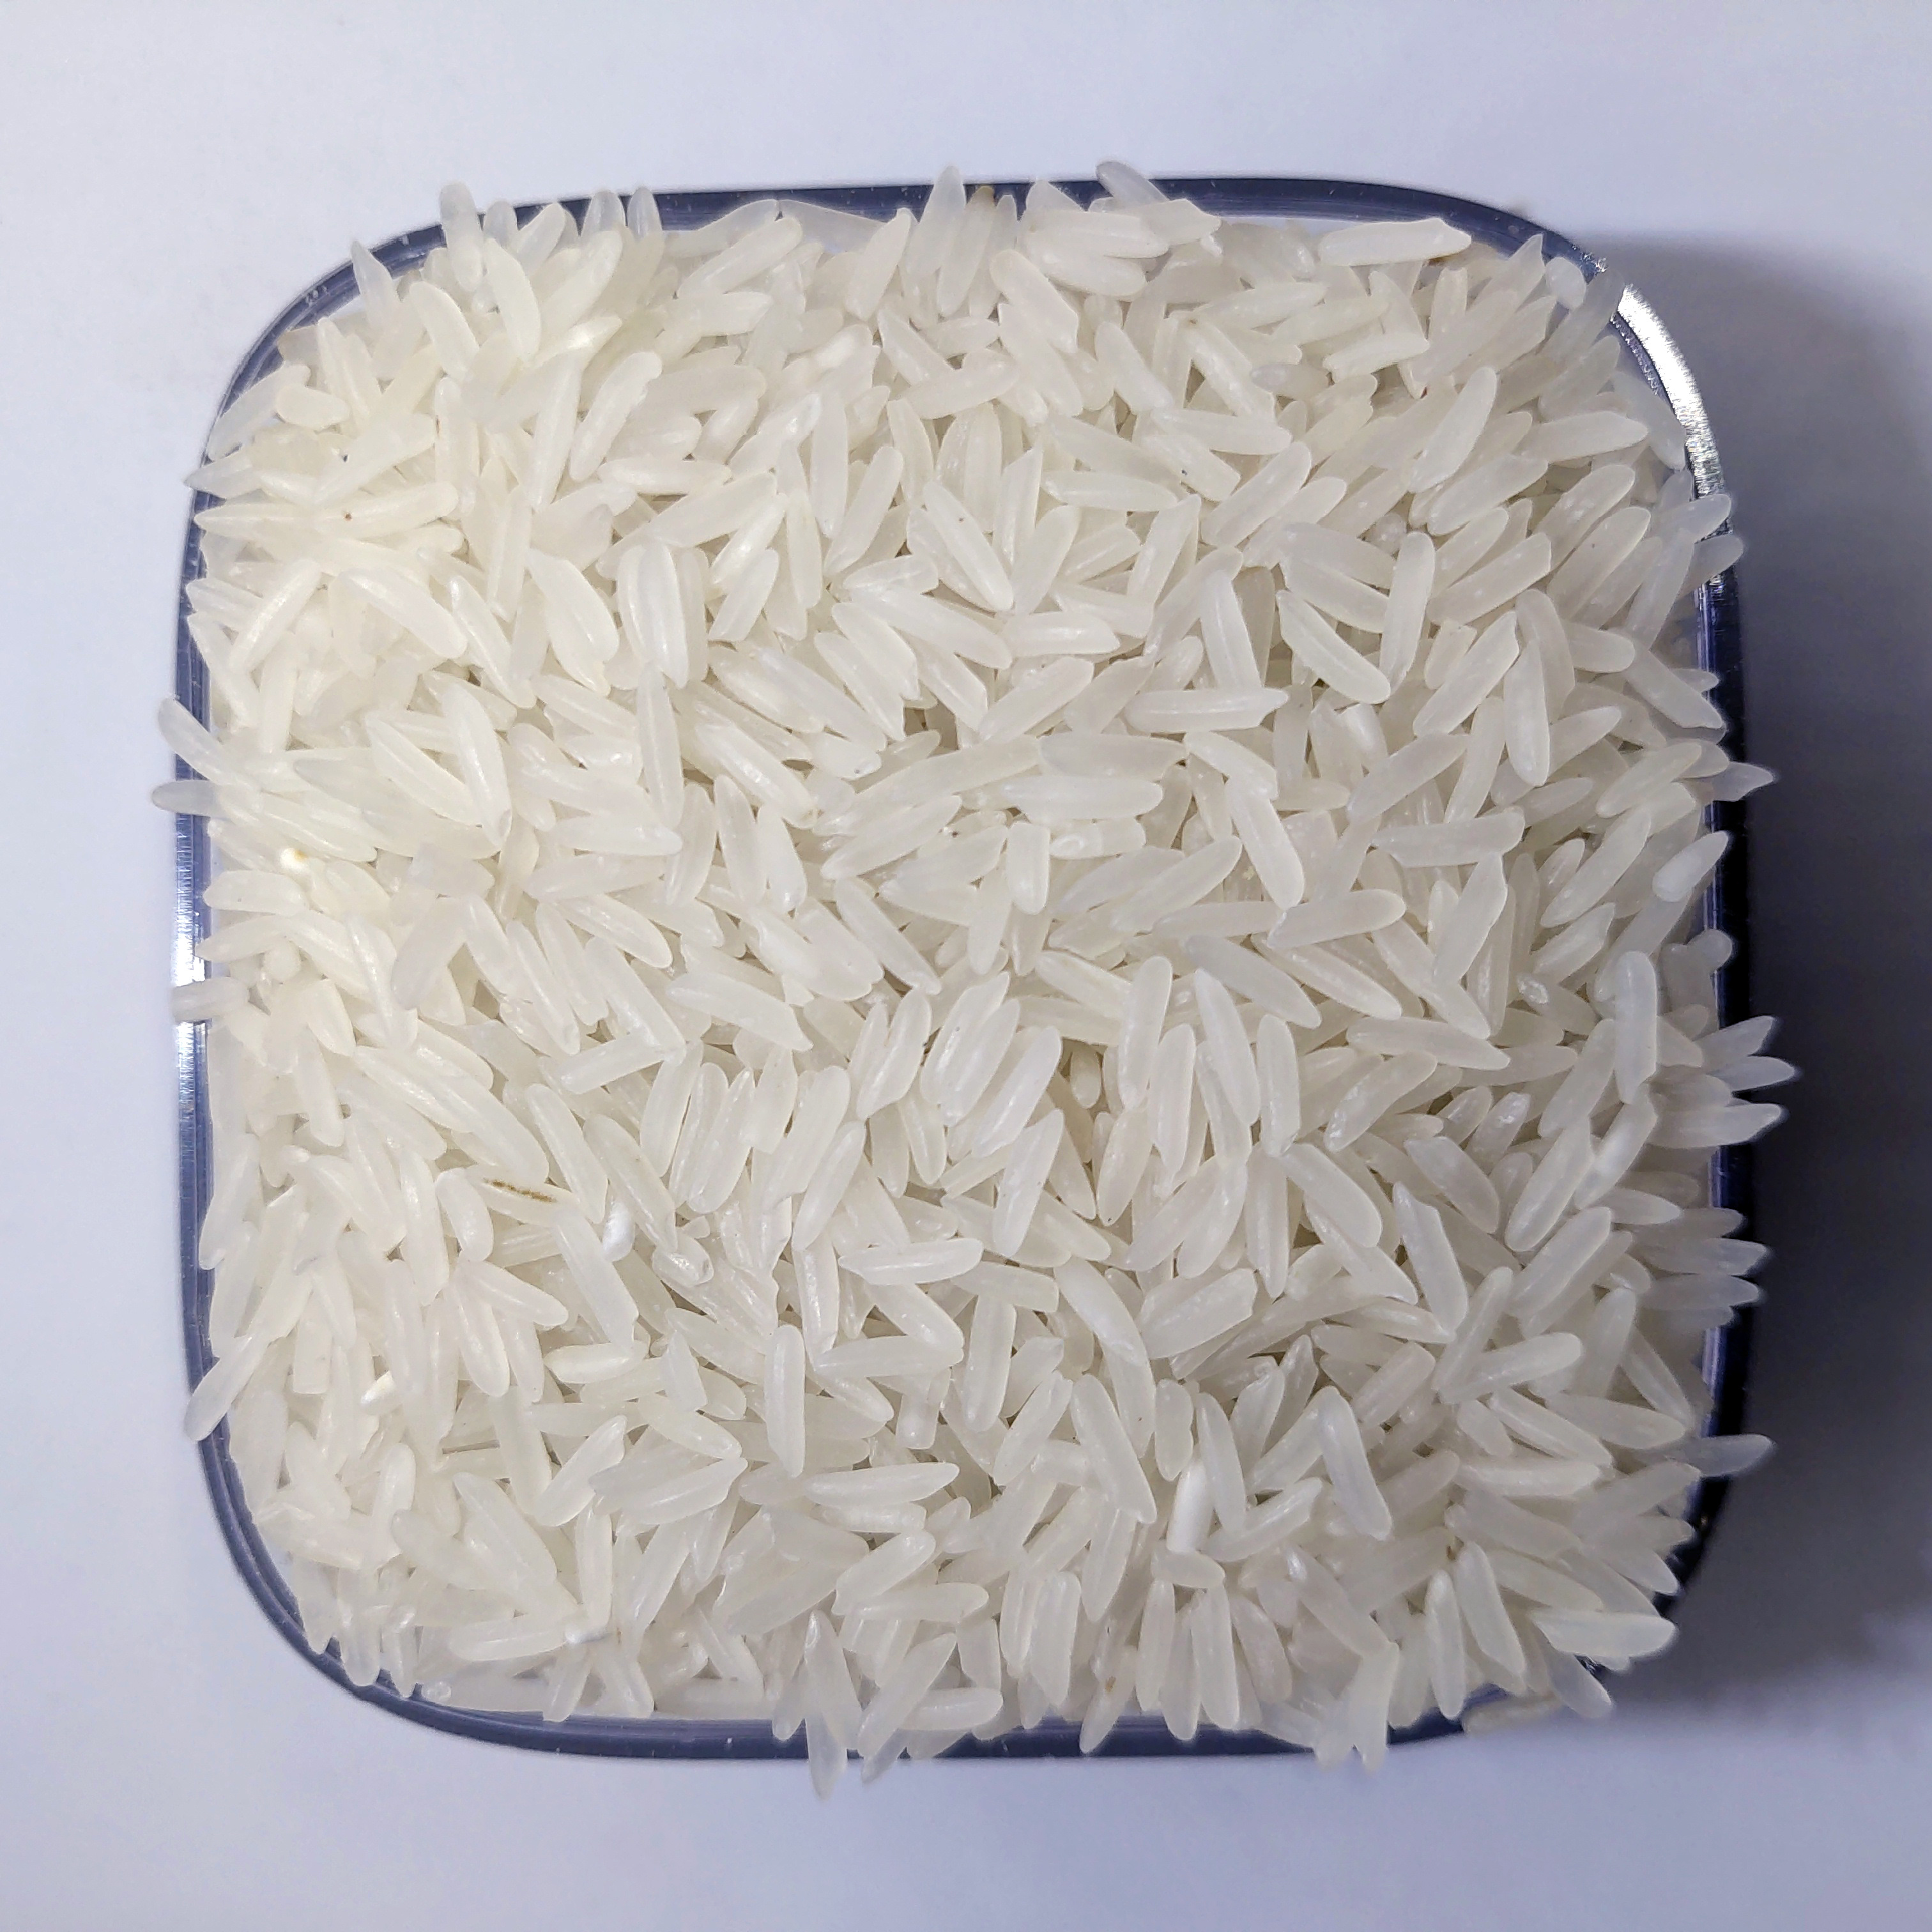 Indian White Rice (Broken 5 %)